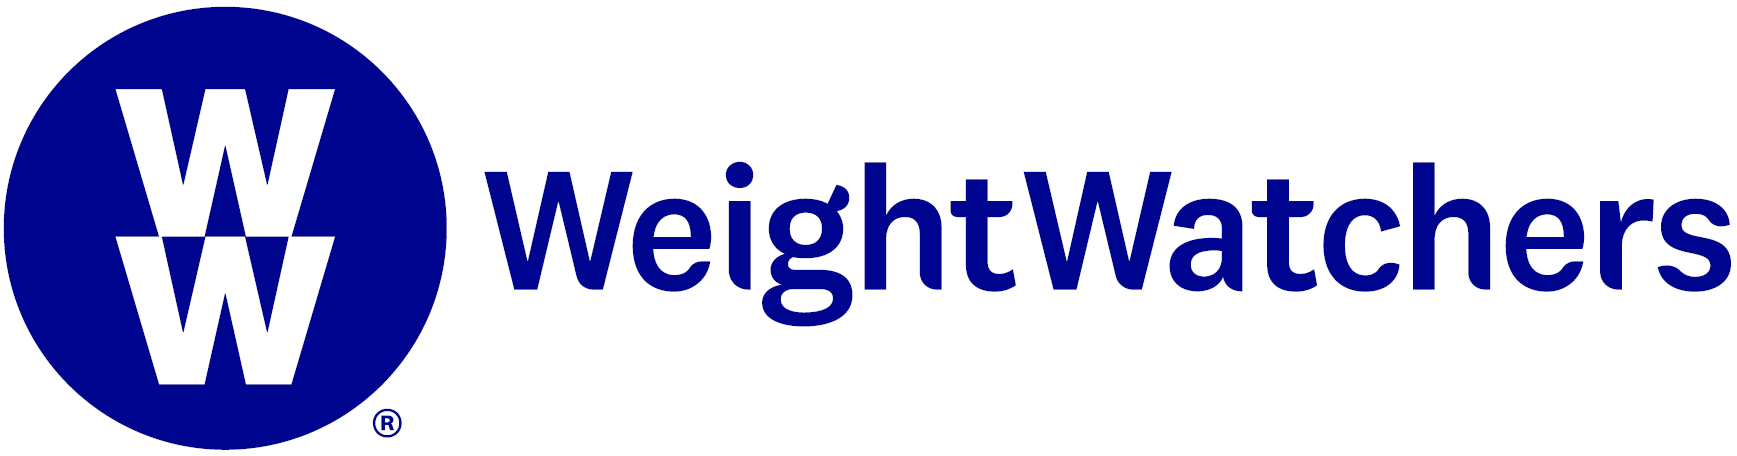 weightwatchers-logo